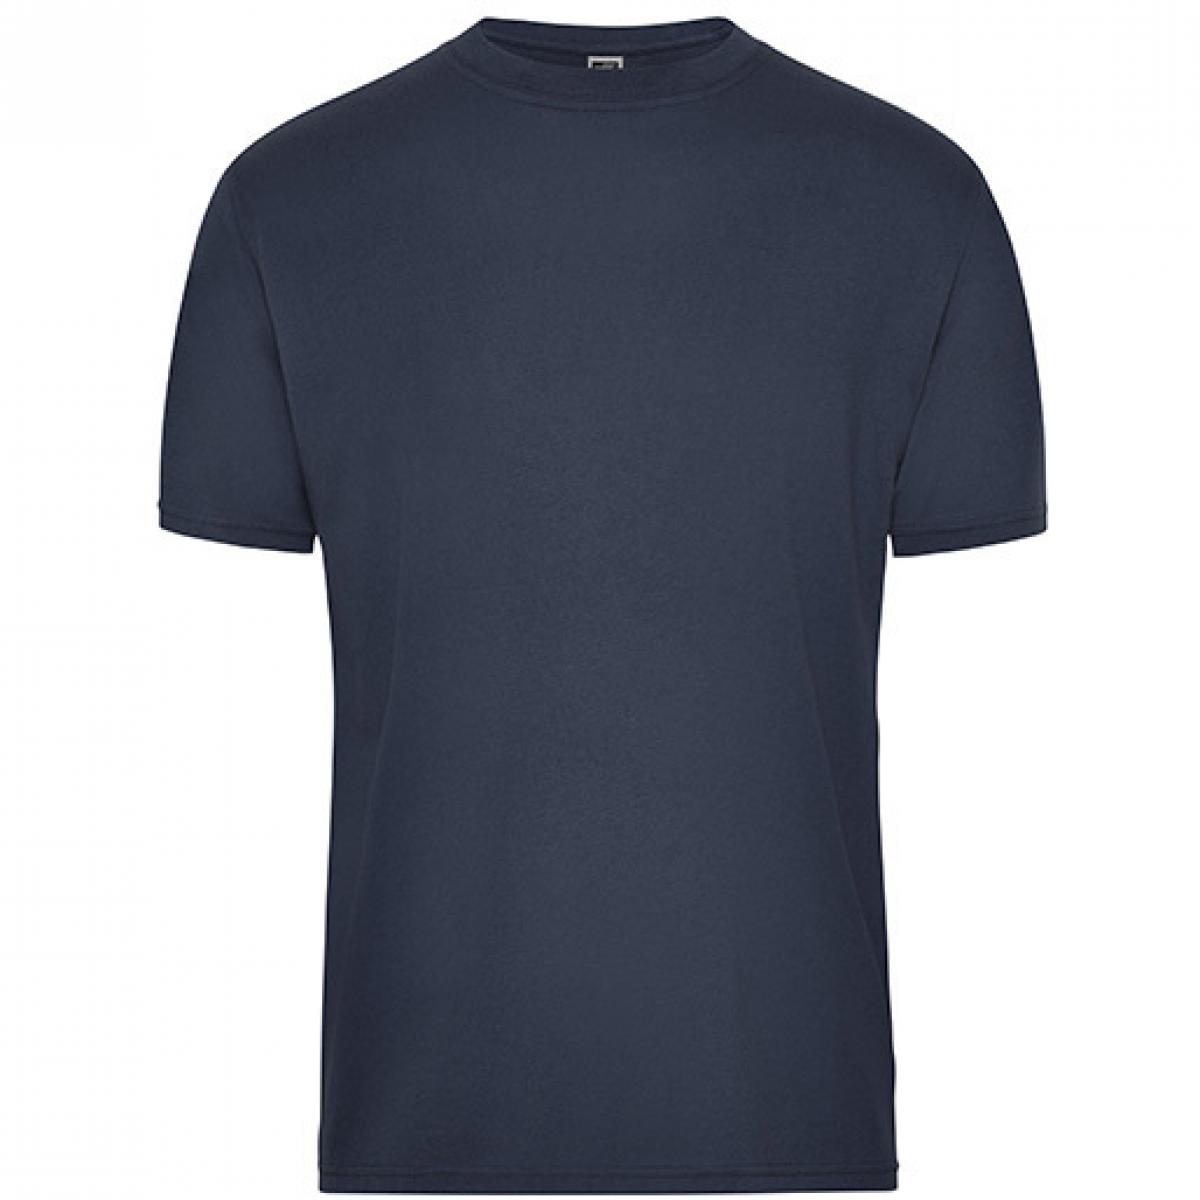 Hersteller: James+Nicholson Herstellernummer: JN1808 Artikelbezeichnung: Men‘s BIO Workwear T-Shirt, Waschbar bis 60 °C Farbe: Navy